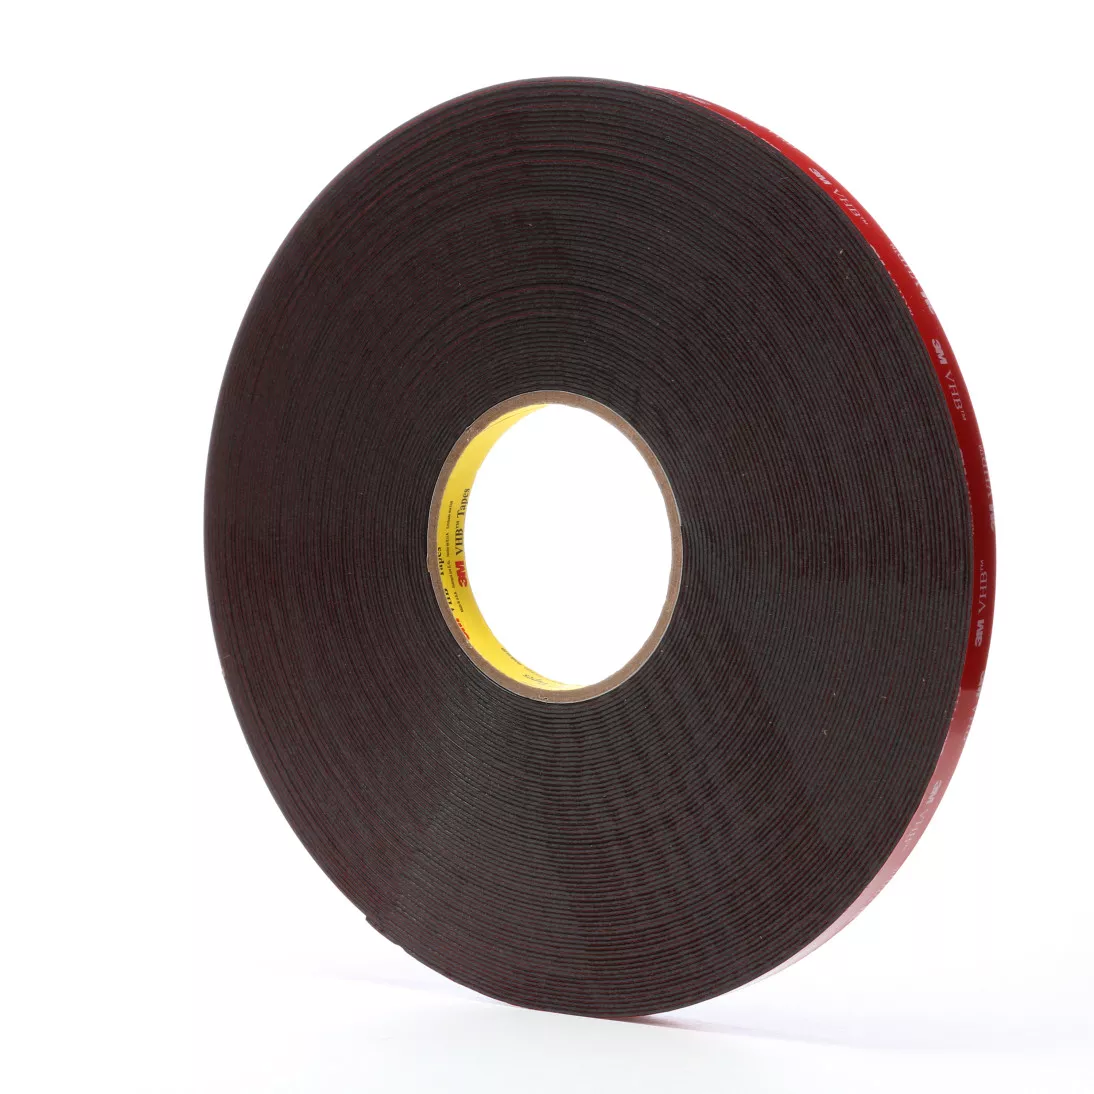 3M™ VHB™ Tape 5952, Black, 1/2 in x 36 yd, 45 mil, 18 rolls per case